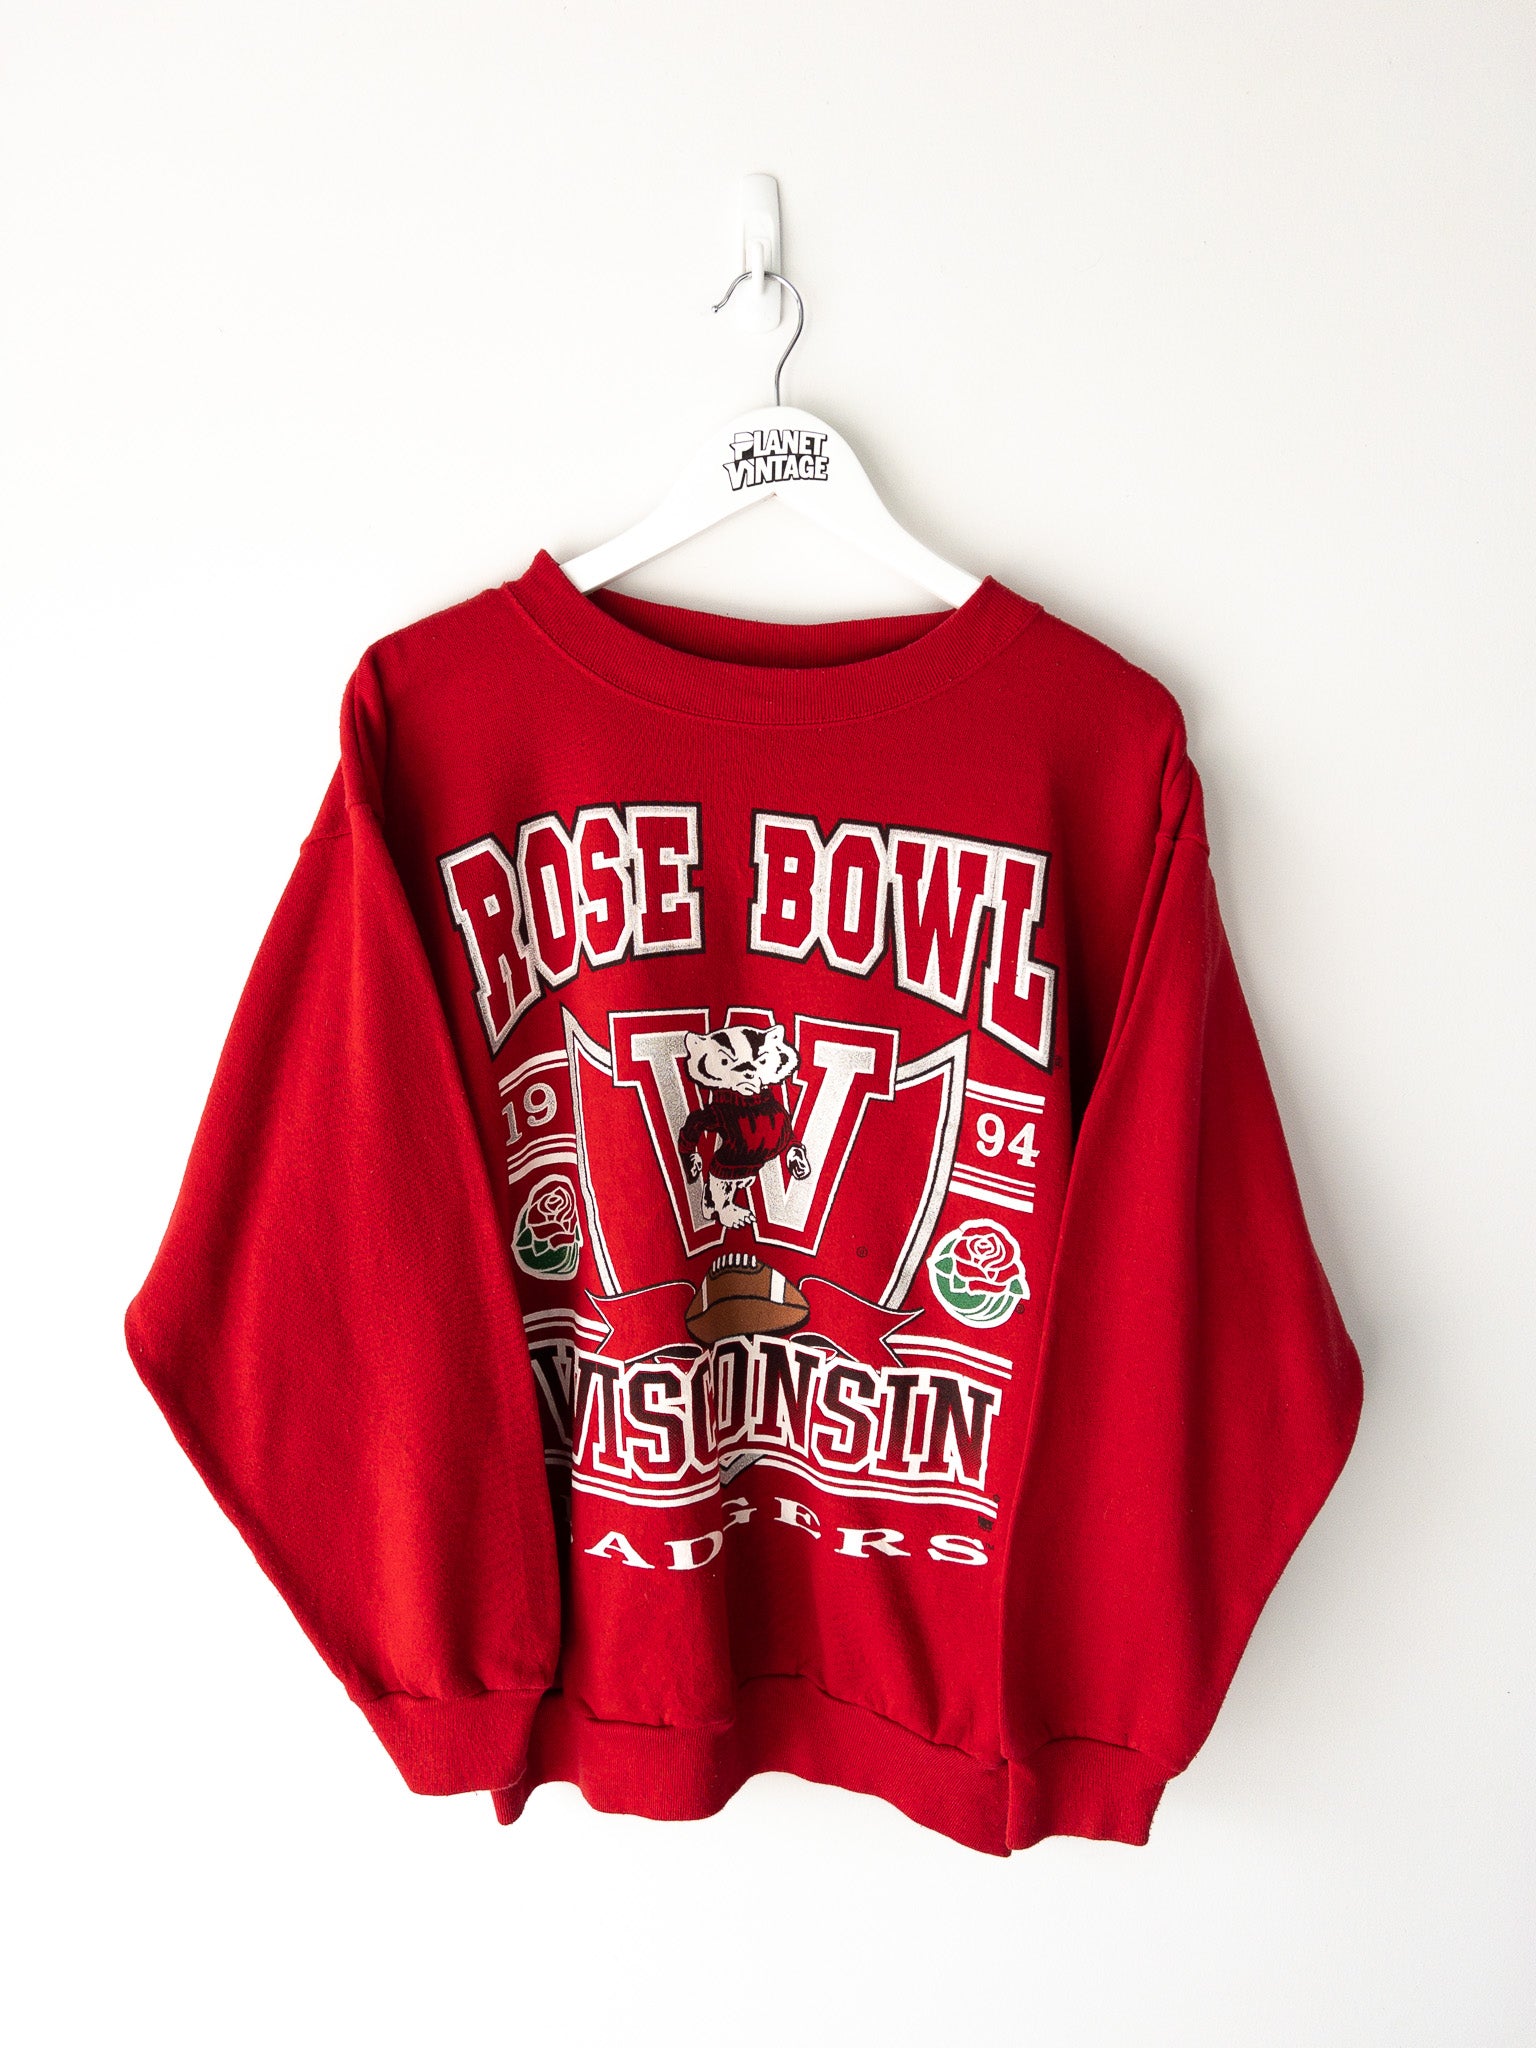 Vintage Wisconsin Badgers Rose Bowl 1994 Sweatshirt (L)